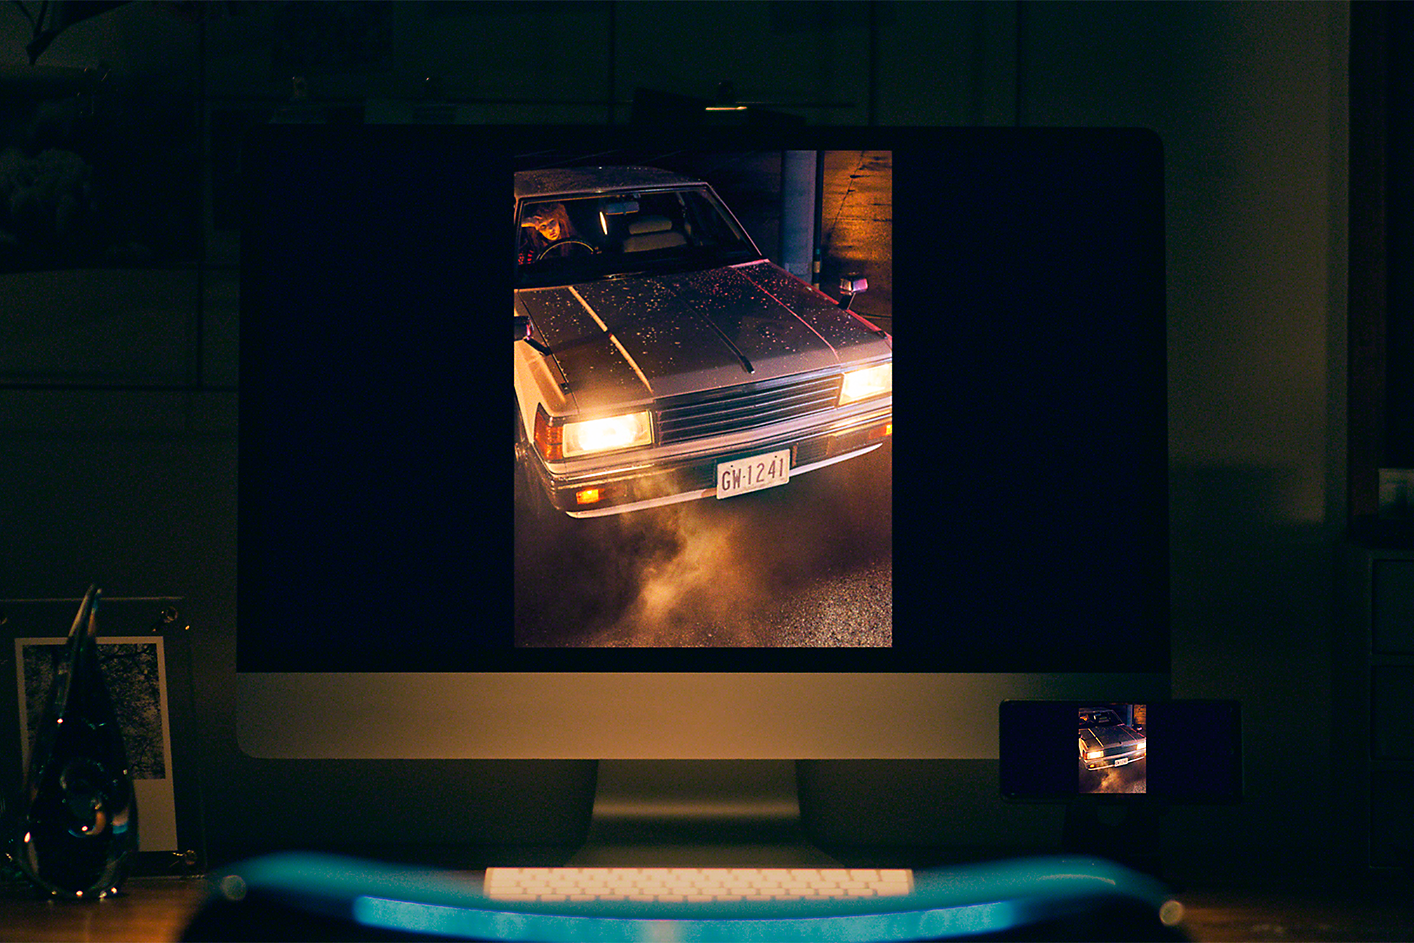 桌面電腦顯示一張低光影像，圖中為開著車頭燈的汽車